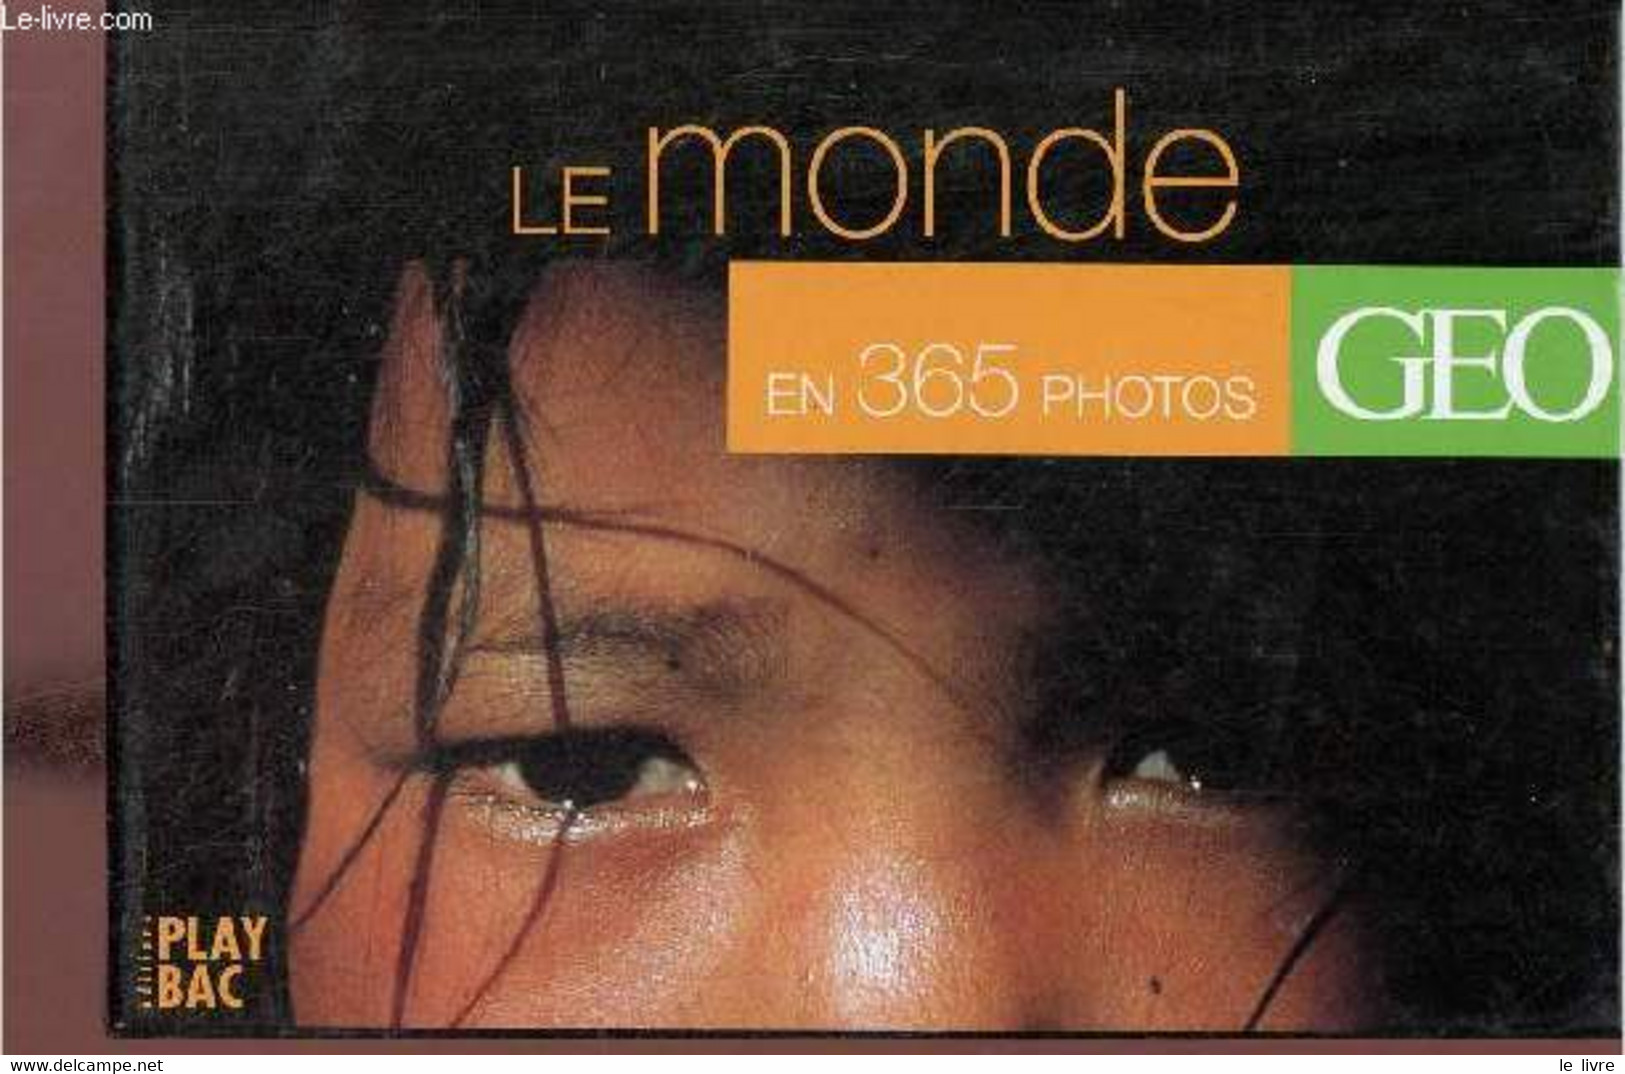 Le Monde En 365 Photos - Geo. - Collectif - 2001 - Agenda & Kalender